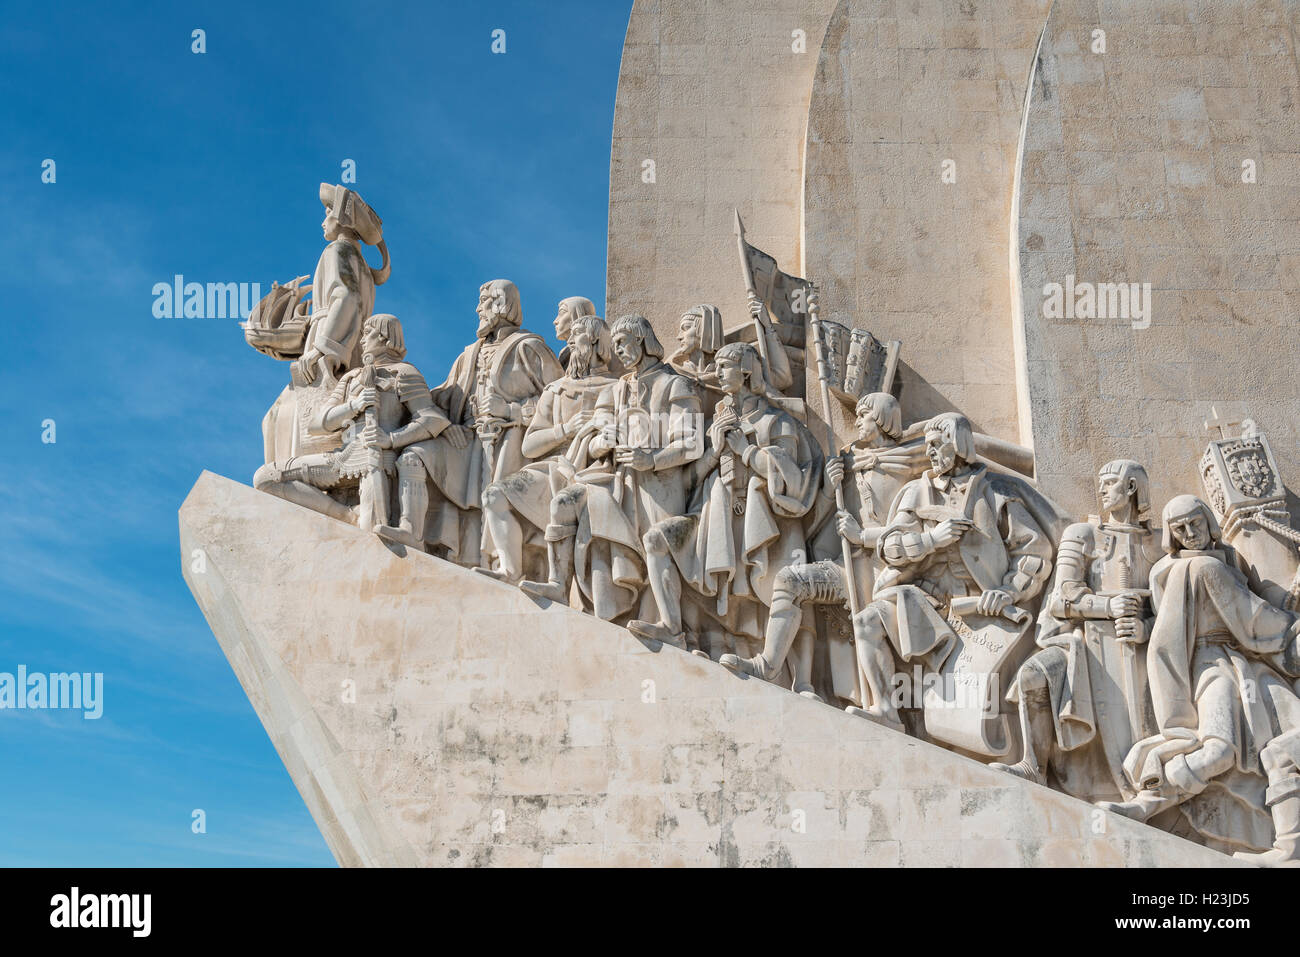 Padrão dos Descobrimentos, Monument des Découvertes, close-up, Belém, Lisbonne, Portugal Banque D'Images